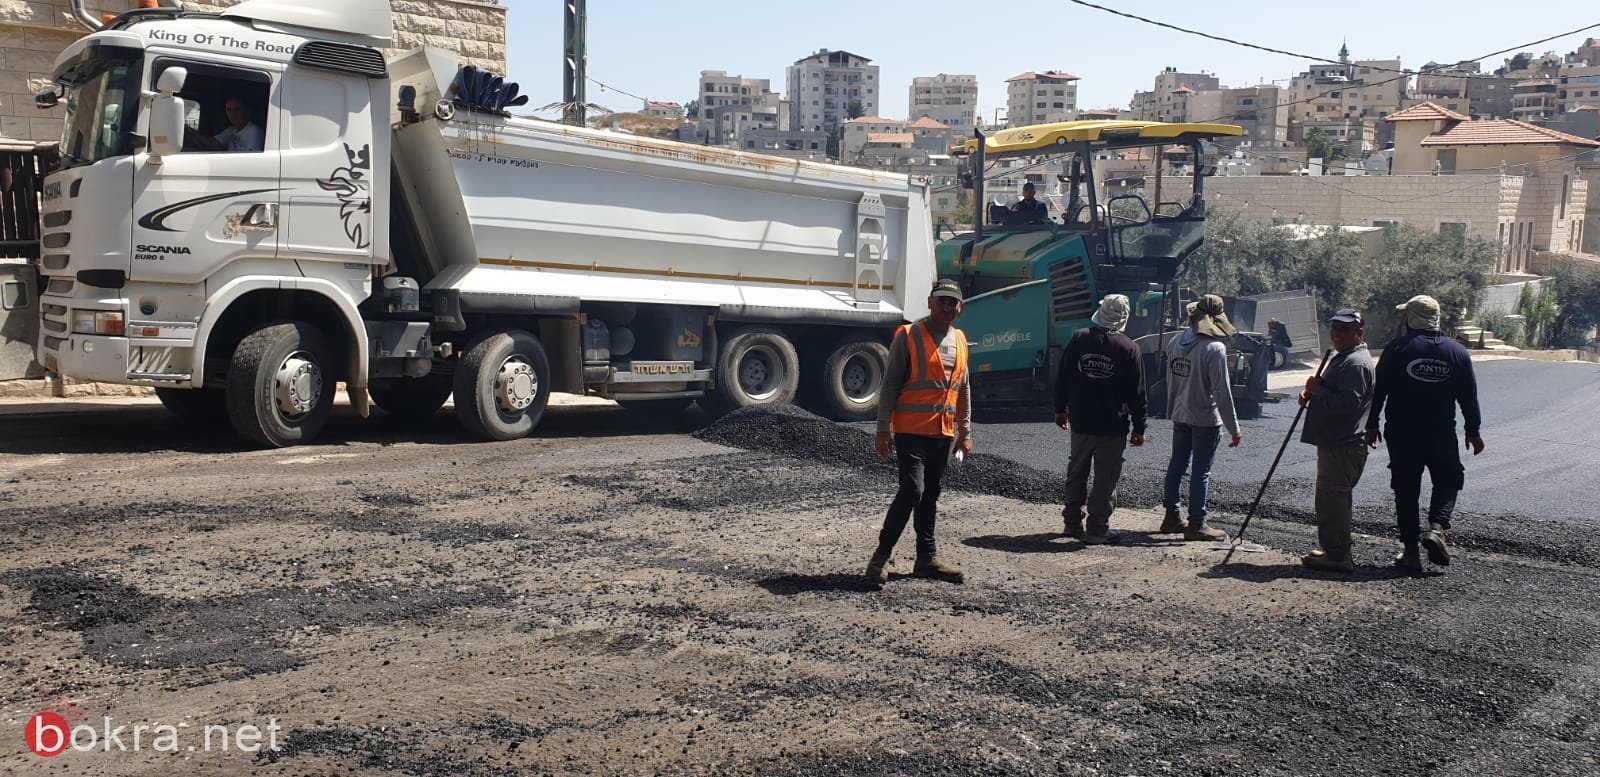 الناصرة: مشروع تعبيد شوارع المدينة يبدأ...حي البشارة يعبد اليوم-17